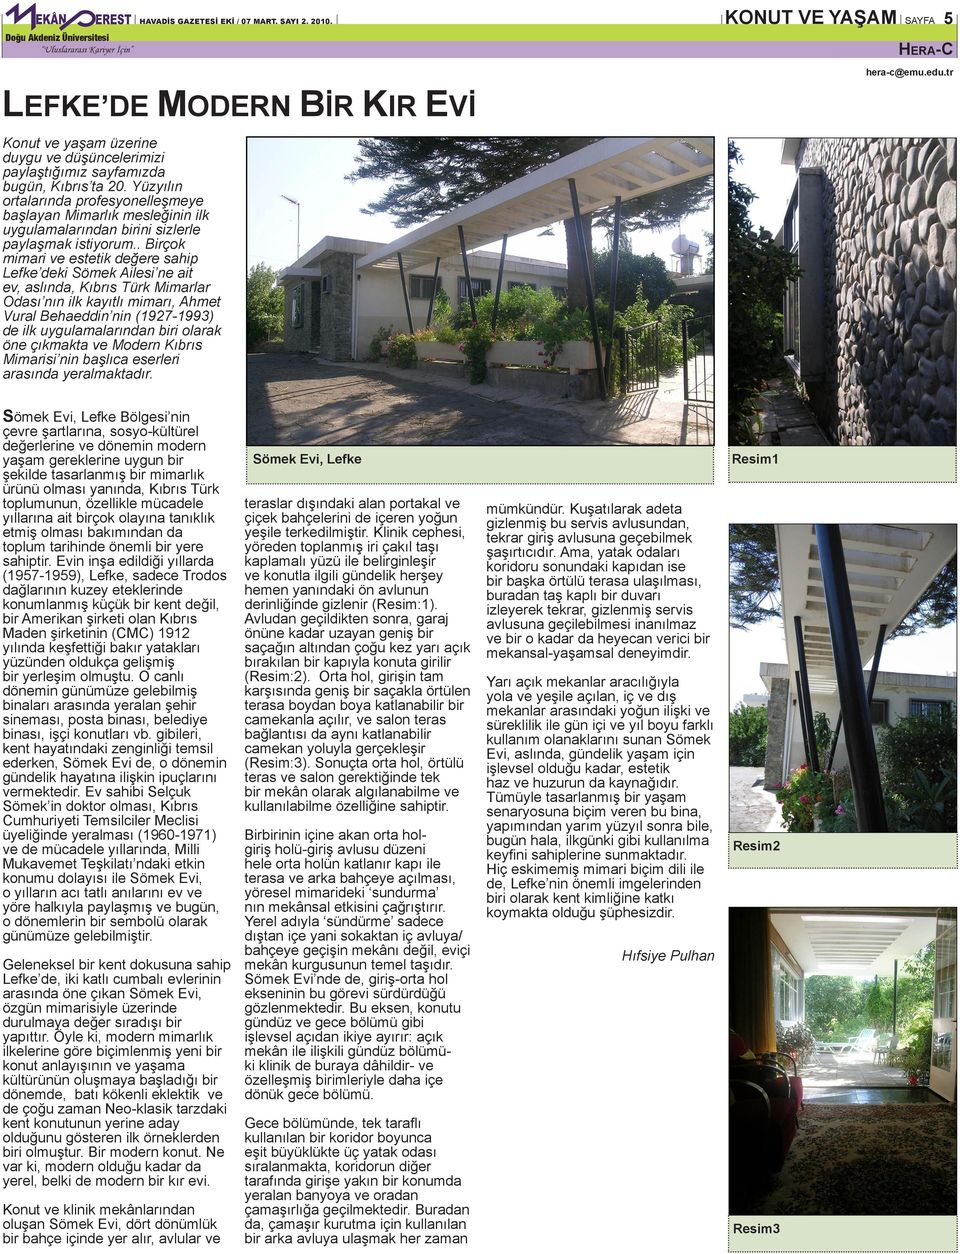 . Birçok mimari ve estetik değere sahip Lefke deki Sömek Ailesi ne ait ev, aslında, Kıbrıs Türk Mimarlar Odası nın ilk kayıtlı mimarı, Ahmet Vural Behaeddin nin (1927-1993) de ilk uygulamalarından